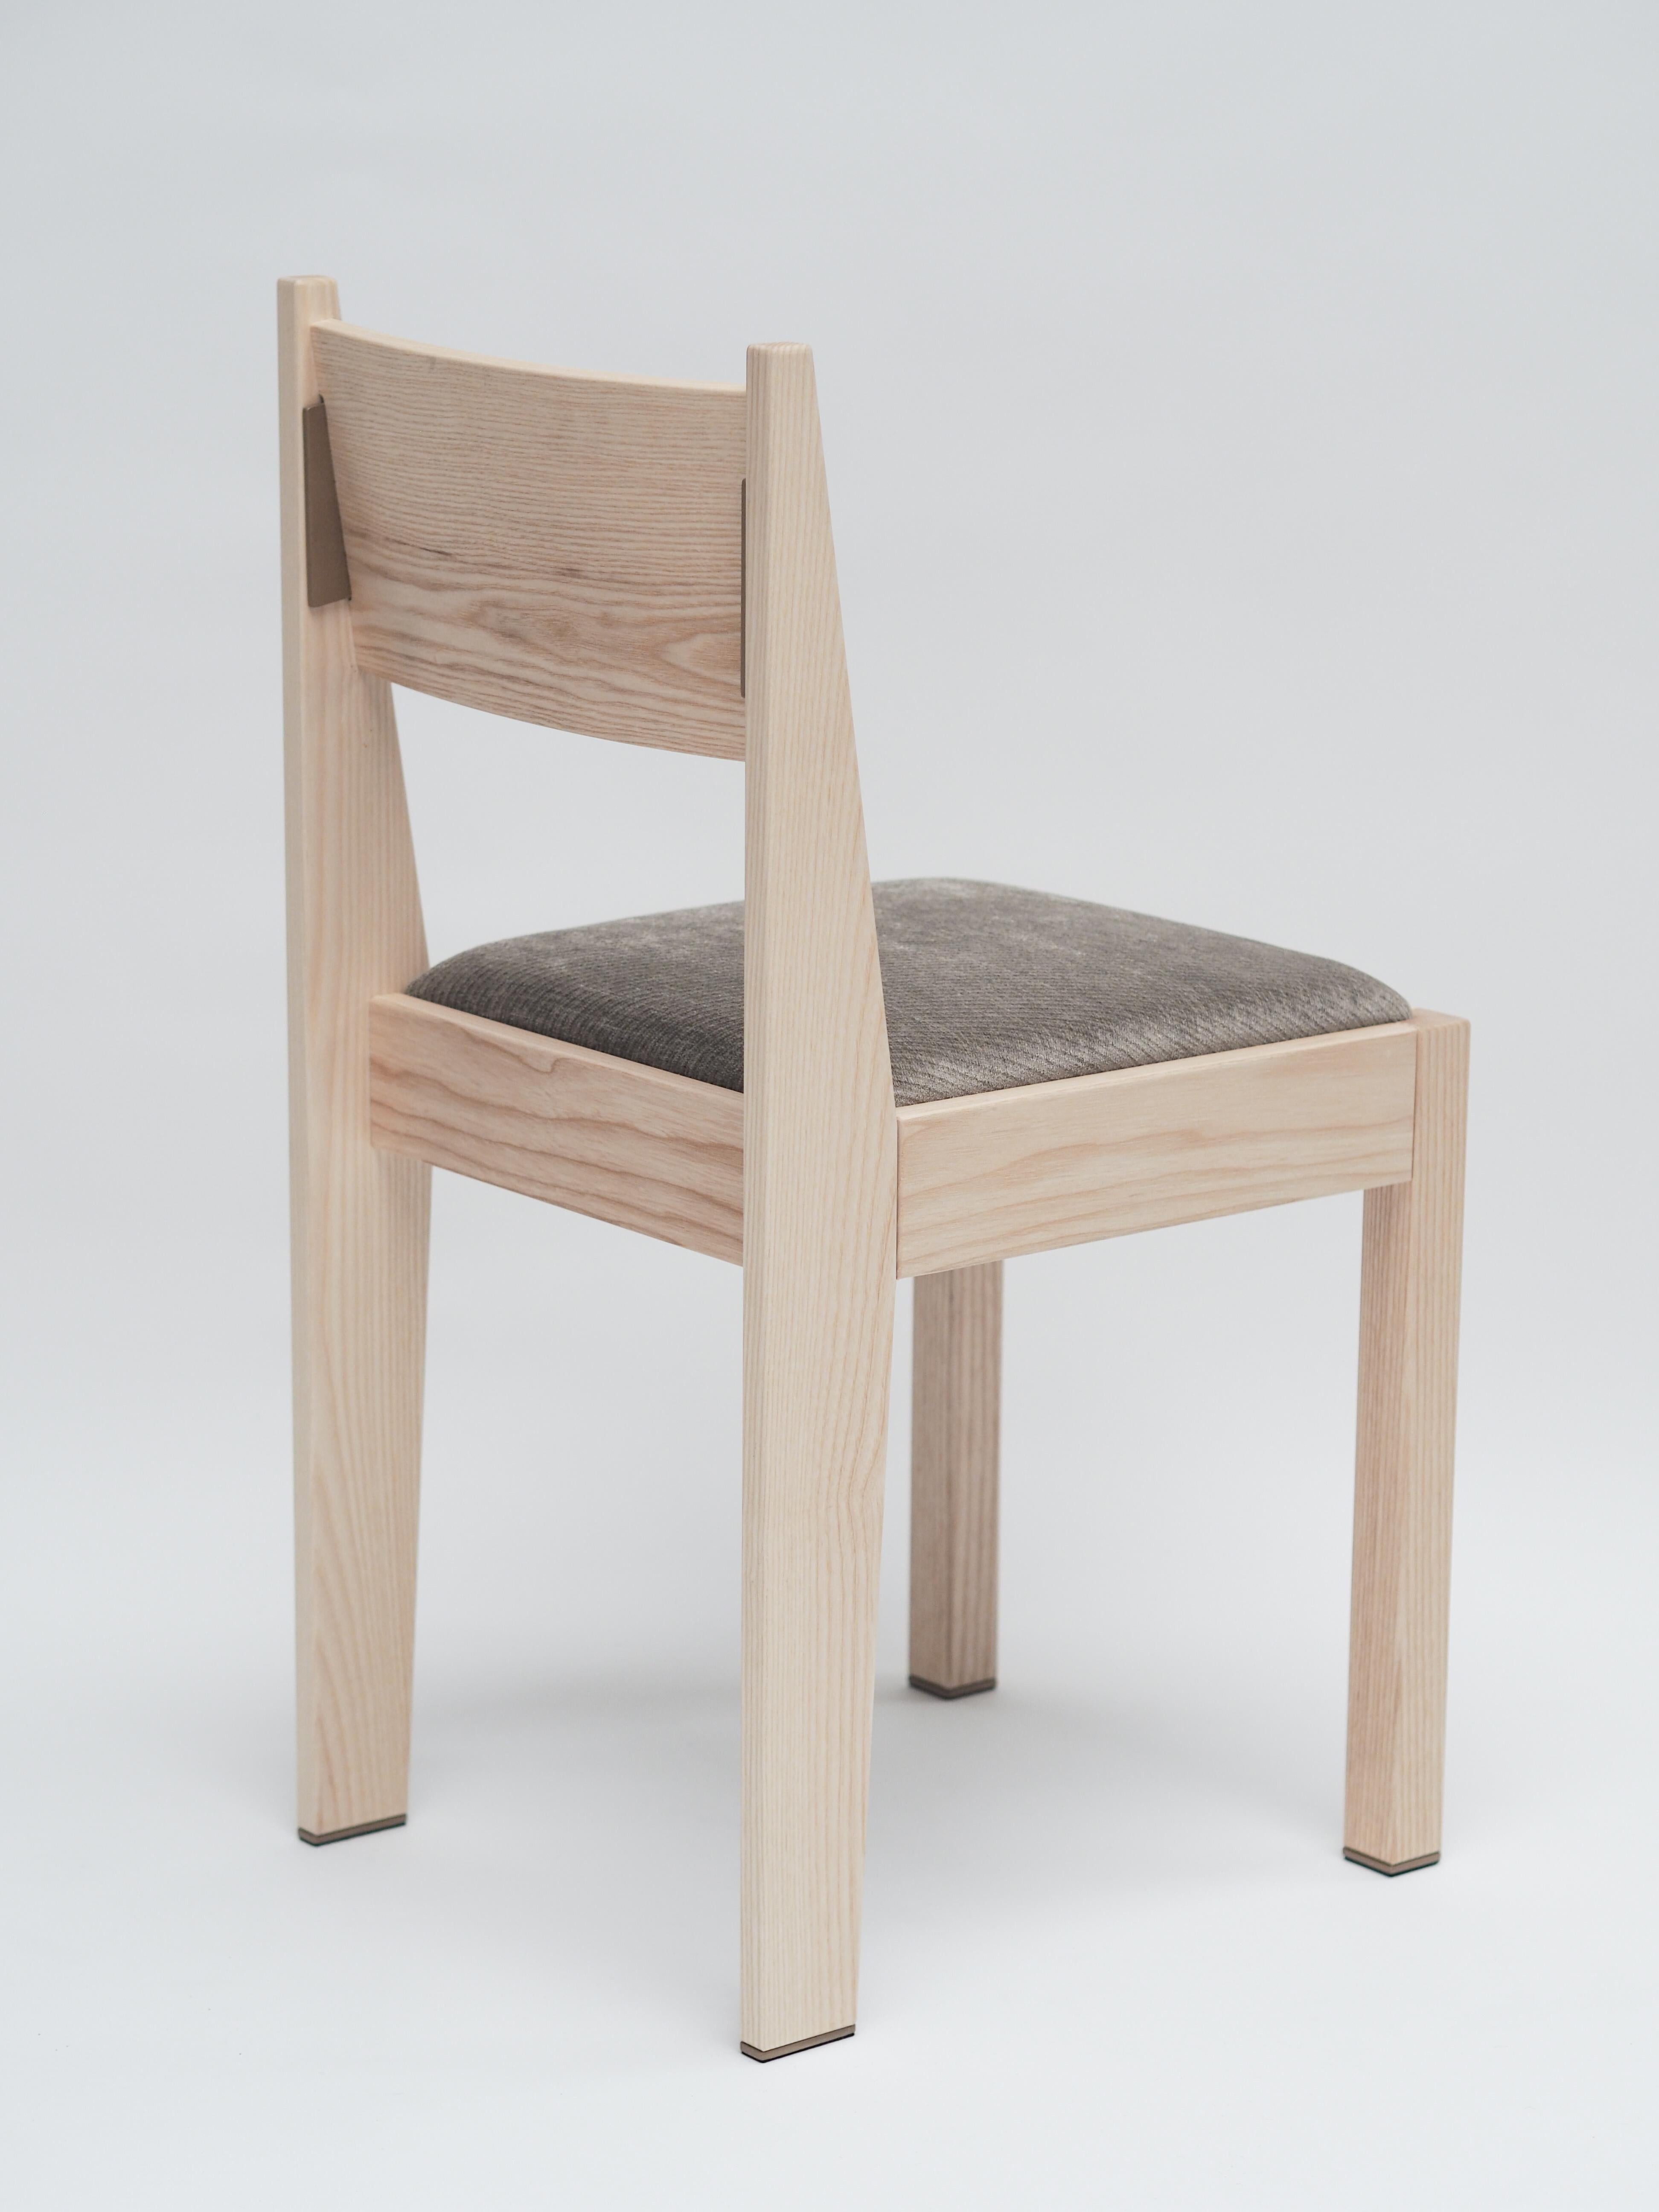 Unser barh Stuhl 01 ist ein klassisches, modernes Design mit feinsten Details. Der von der Art-Déco-Bewegung inspirierte Stuhl sieht vertraut aus und ist daher zeitlos und passt zu fast jeder Einrichtung. Um das Gesamtbild von barh zu